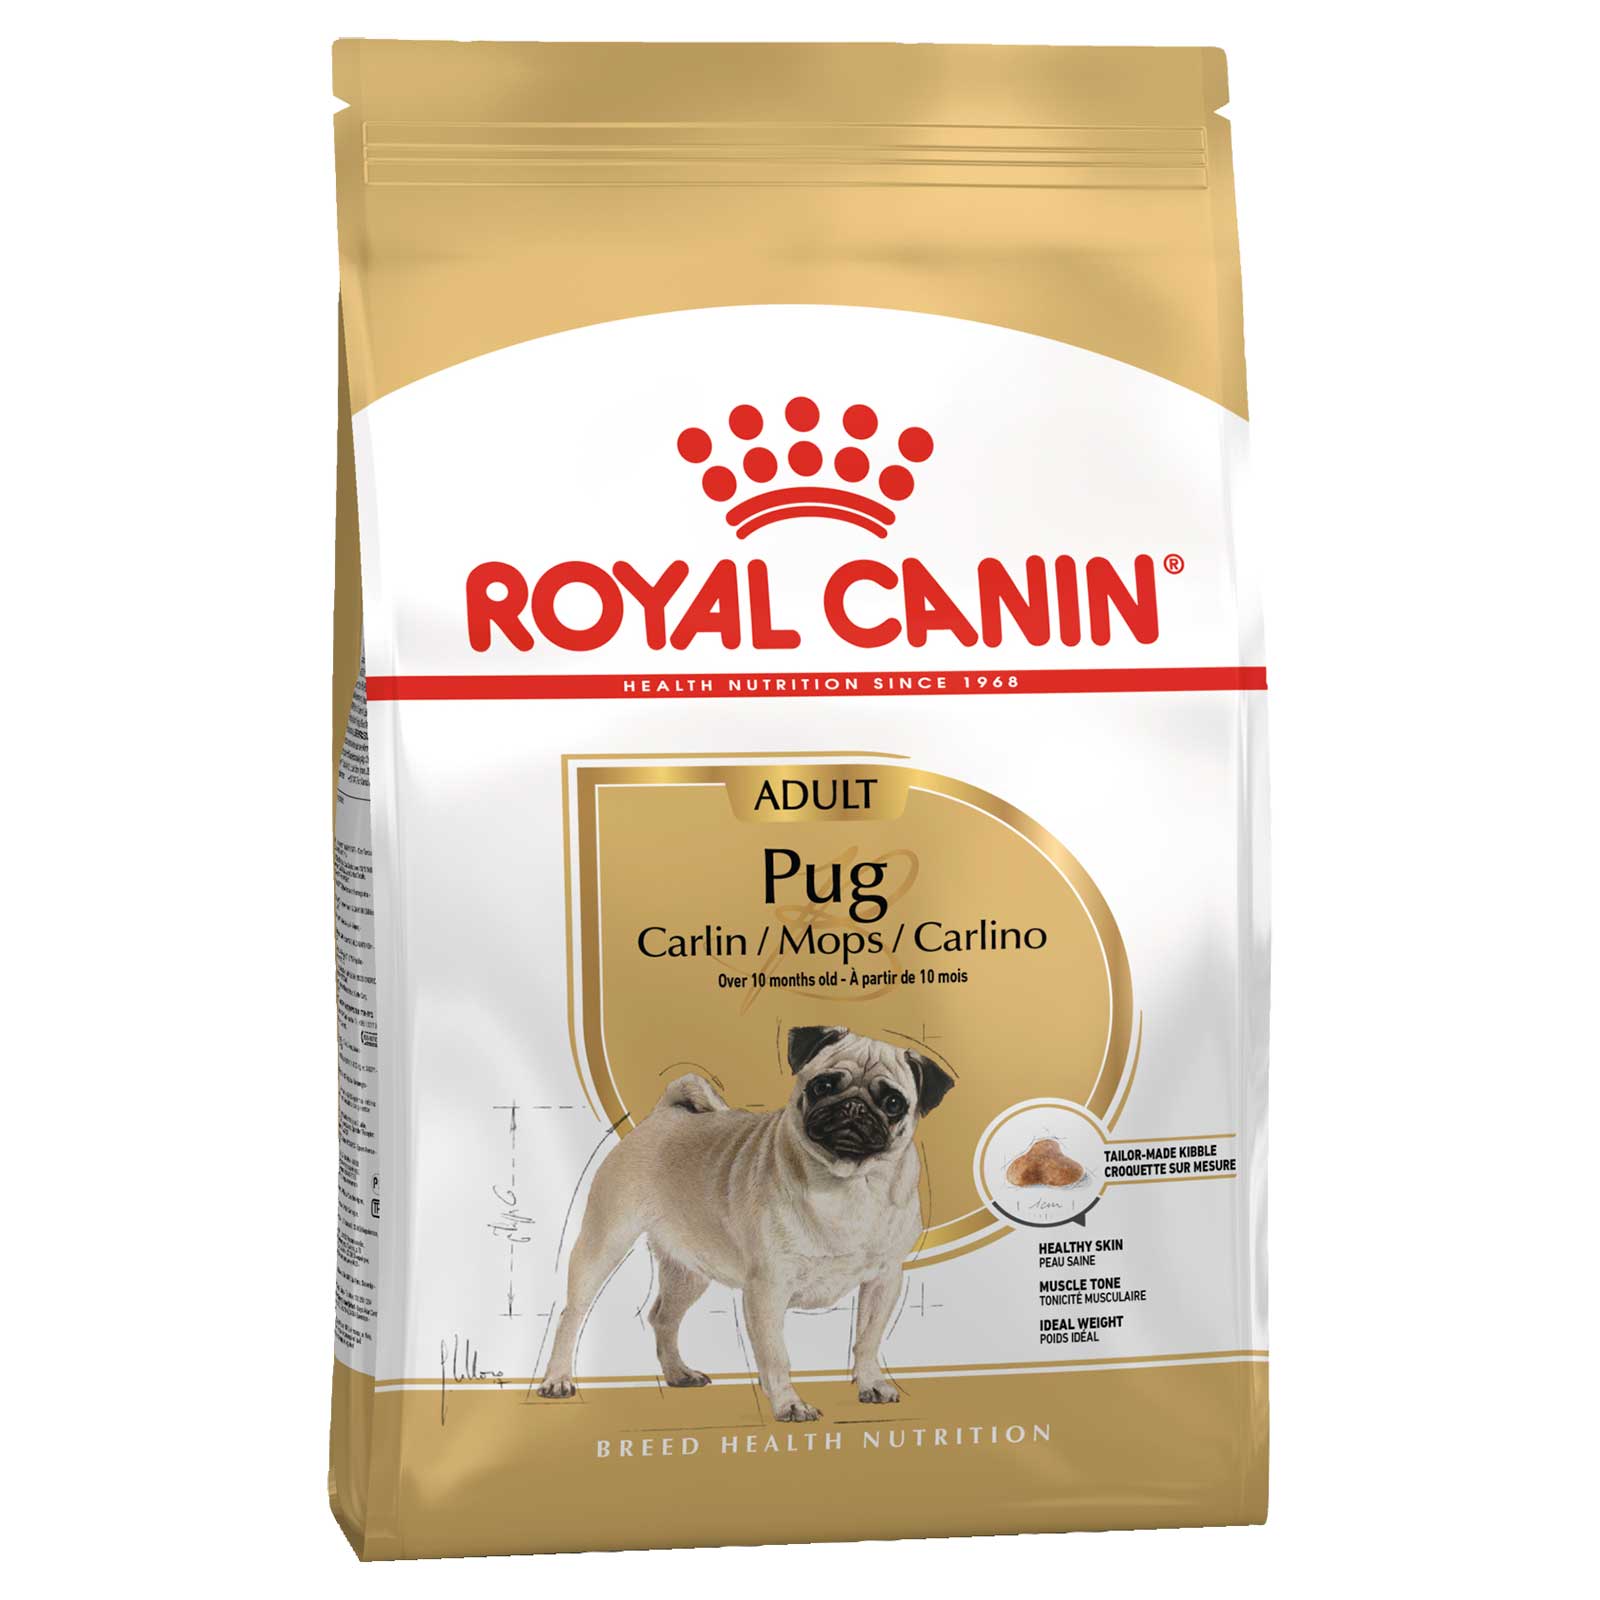 Royal Canin Dog Food Adult Pug